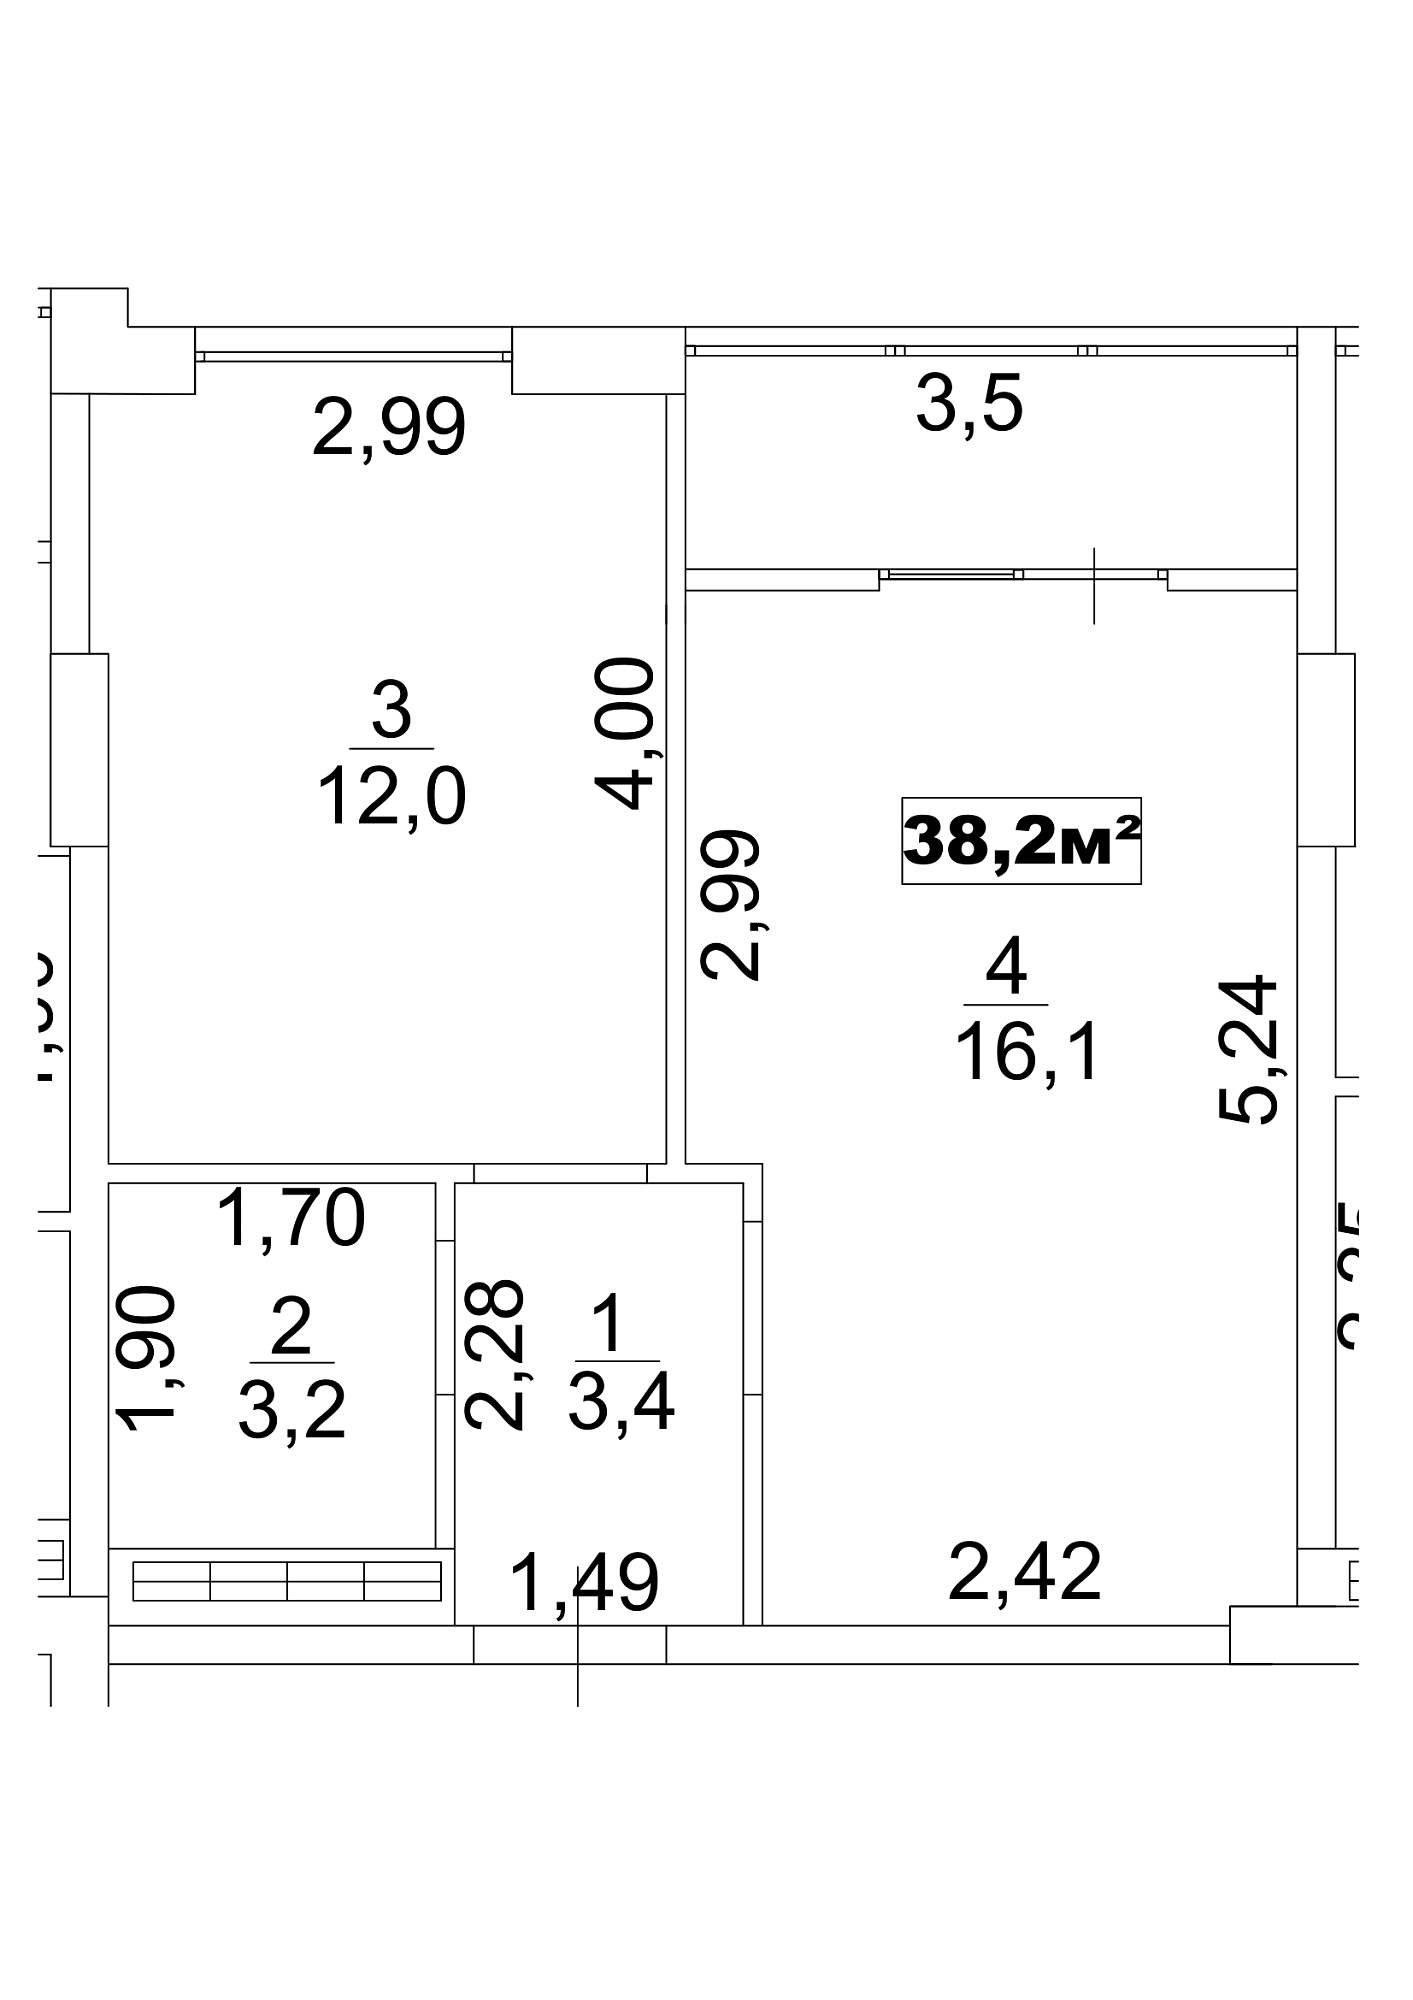 Планировка 1-к квартира площей 37.5м2, AB-13-10/0084а.